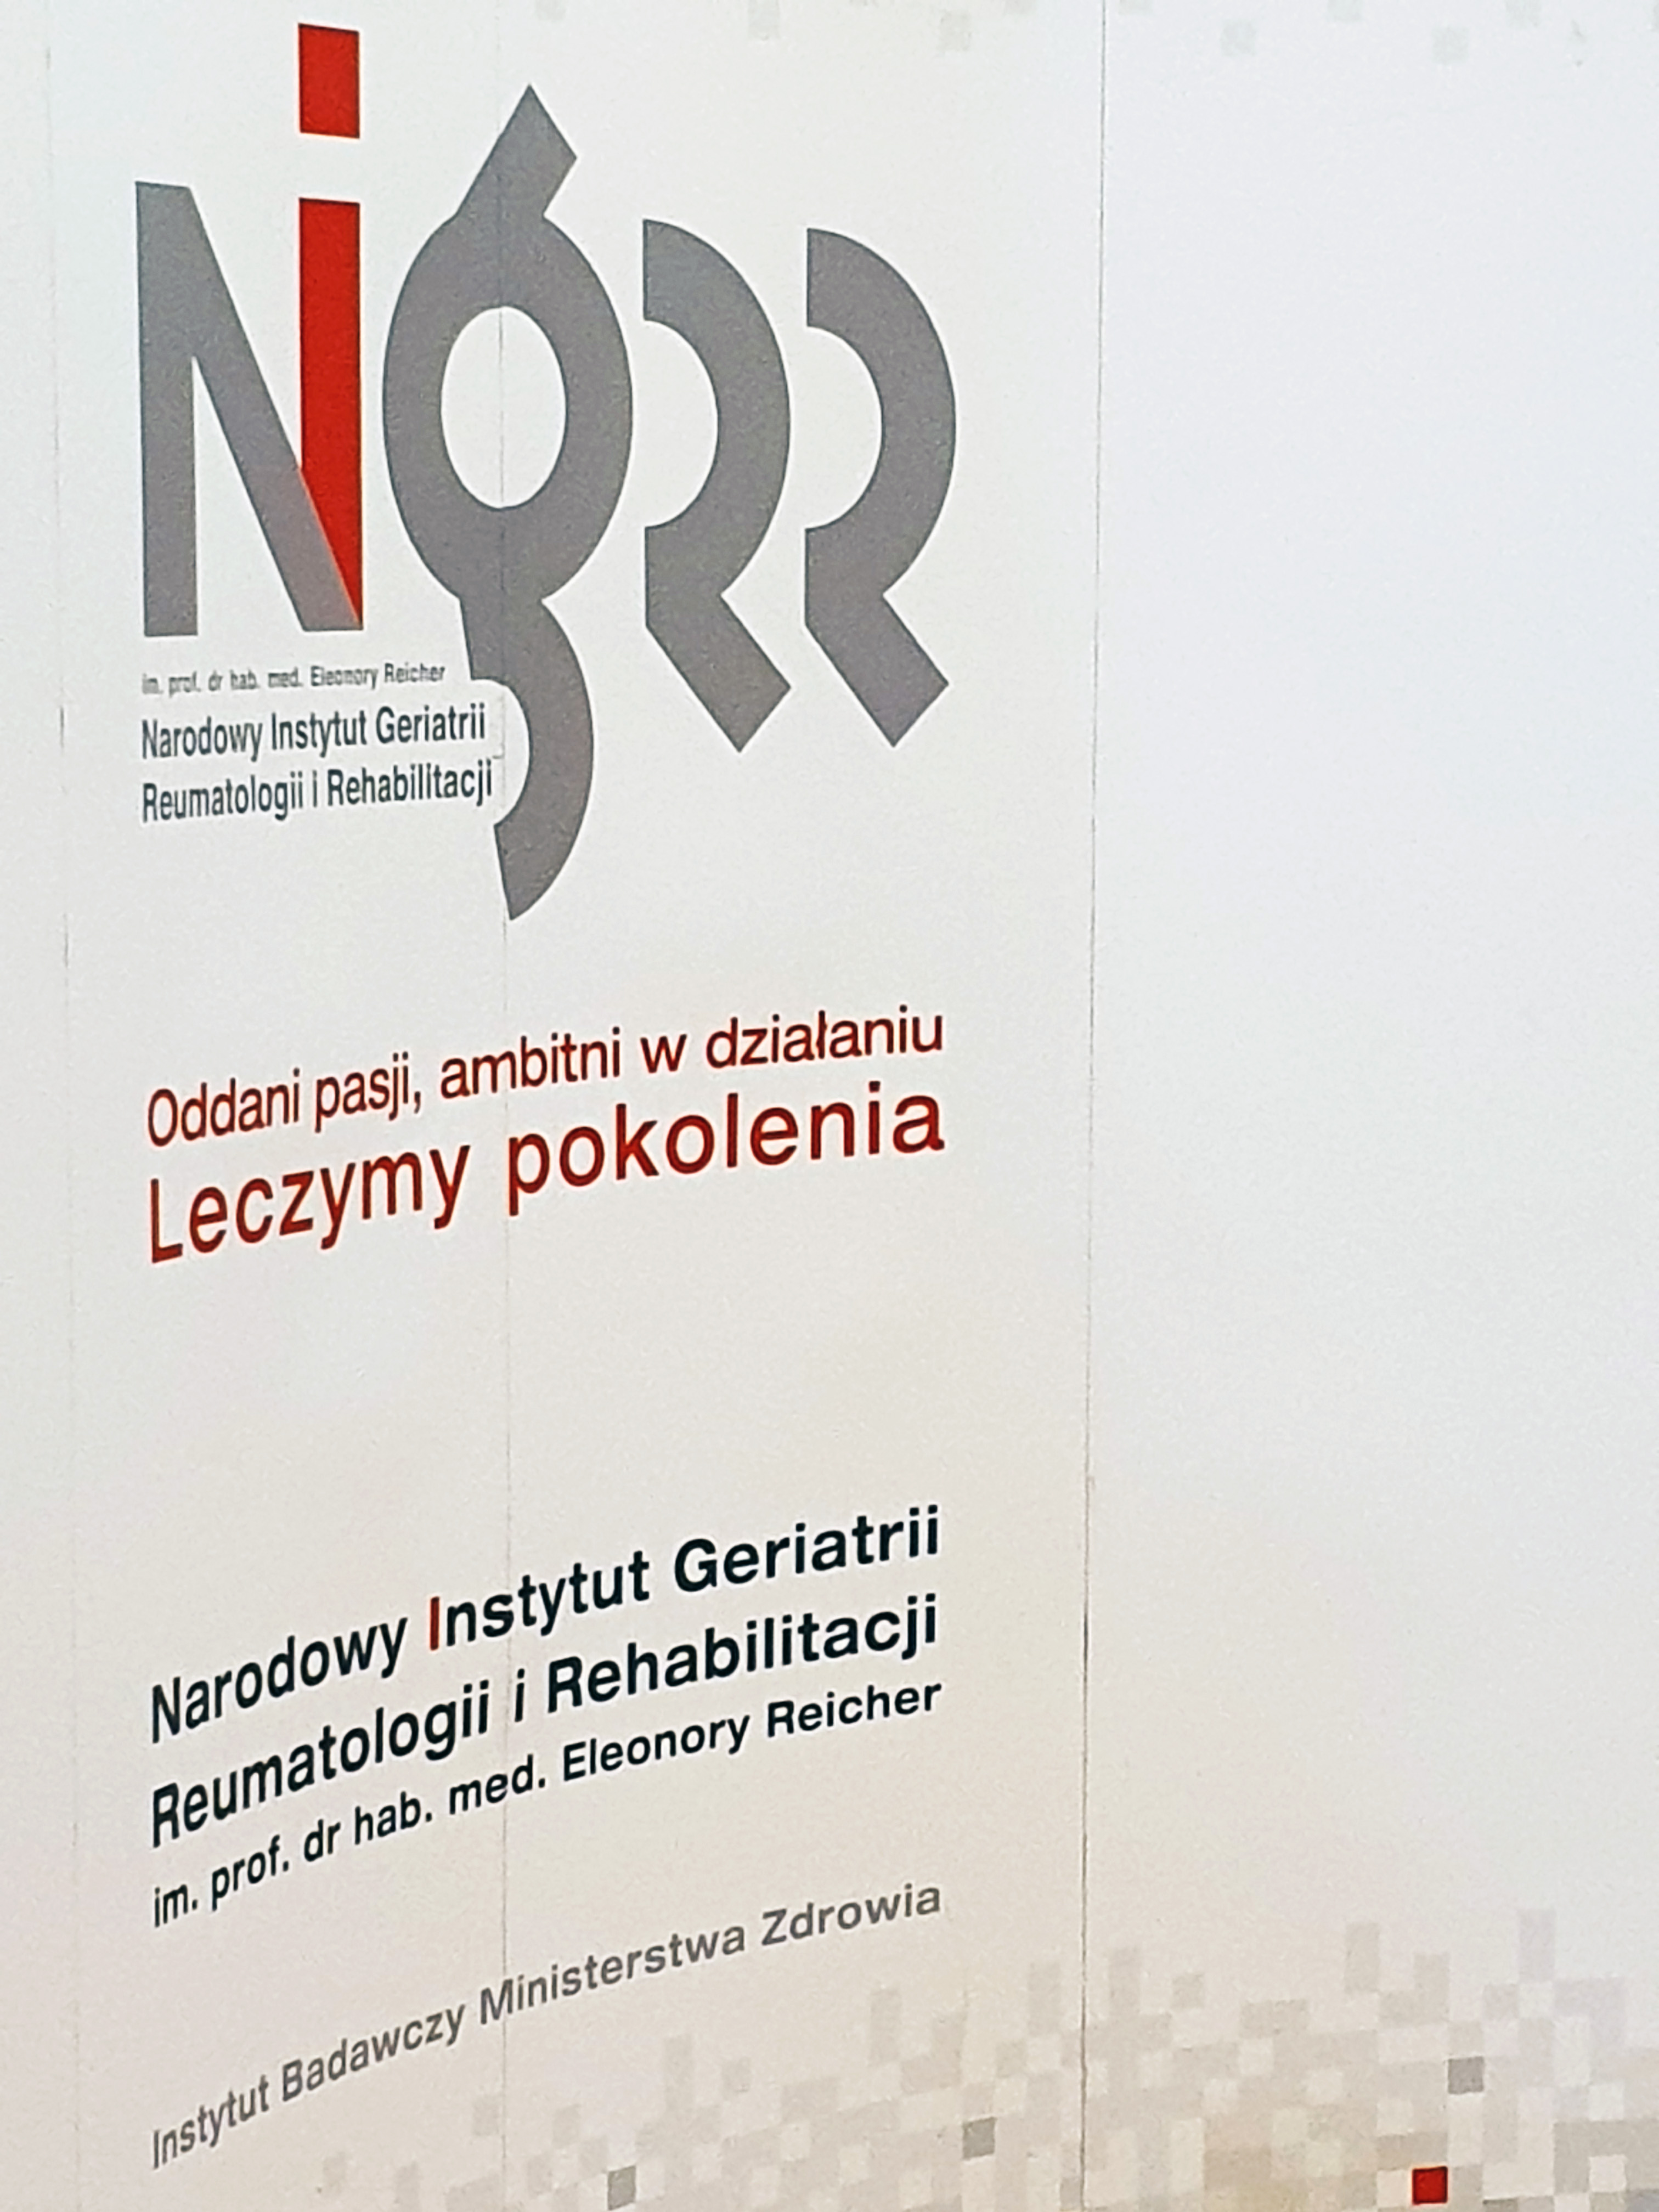 logo of the National Institute of Geriatrics Rheumatology and Rehabilitation